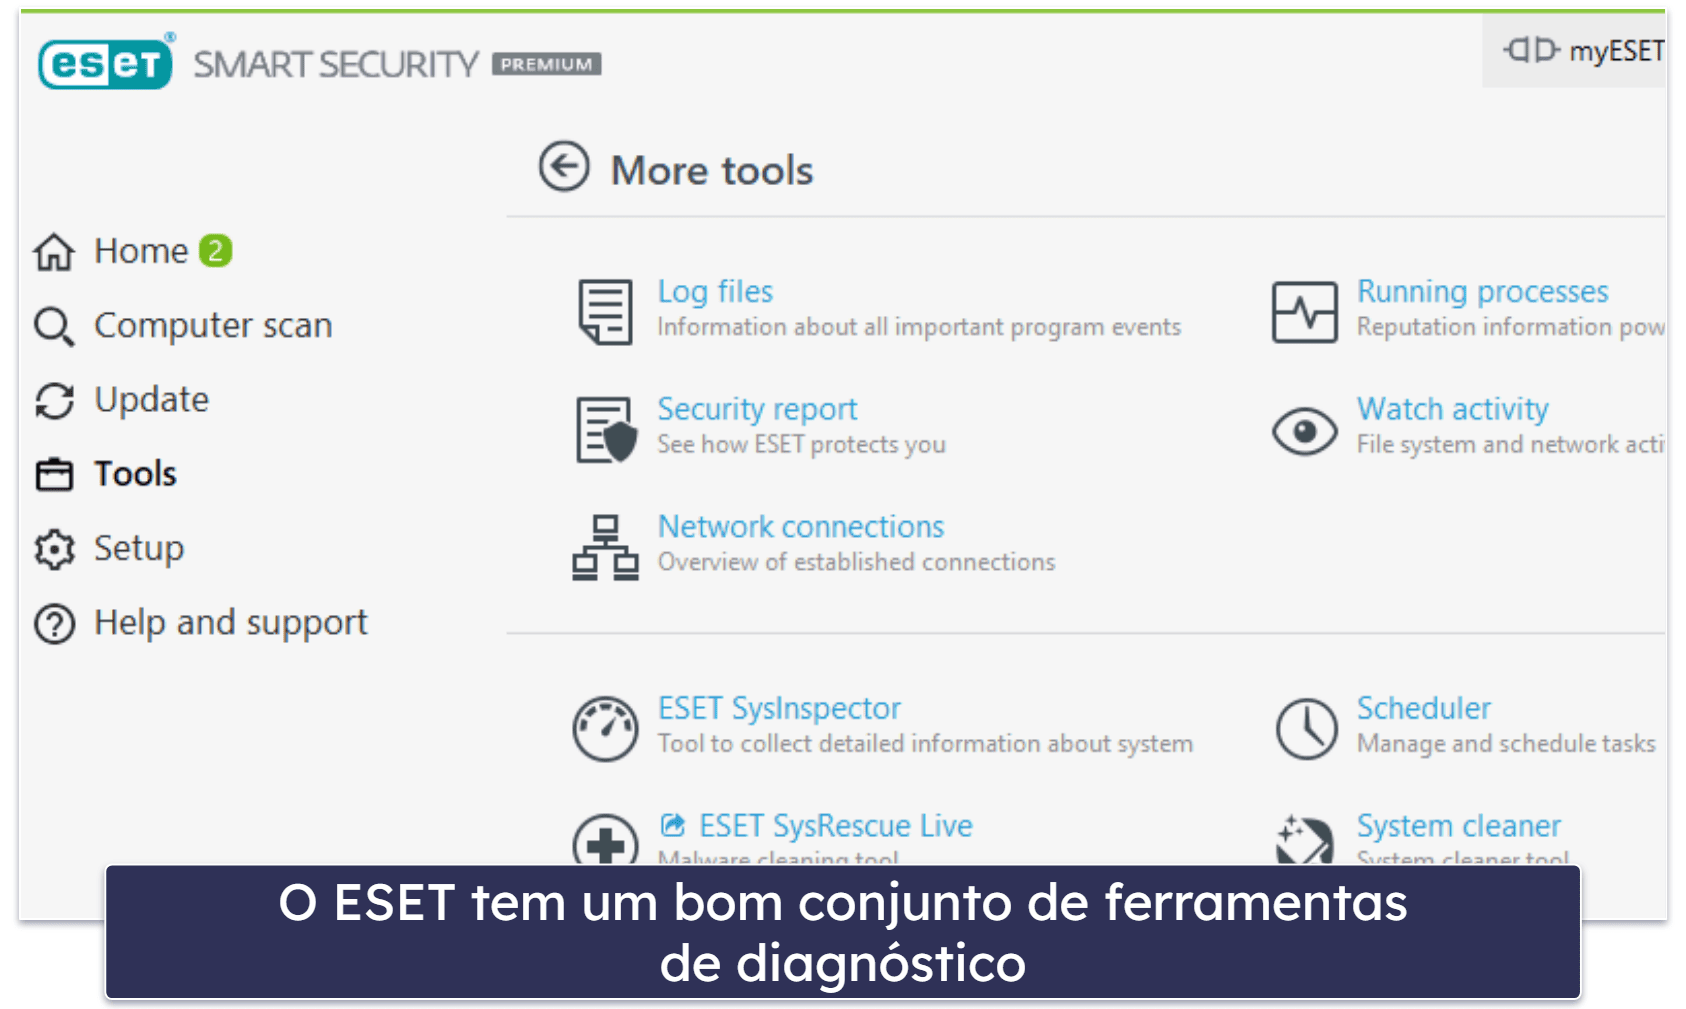 10. ESET Smart Security Premium — Boa verificação de malware e diagnóstico avançado